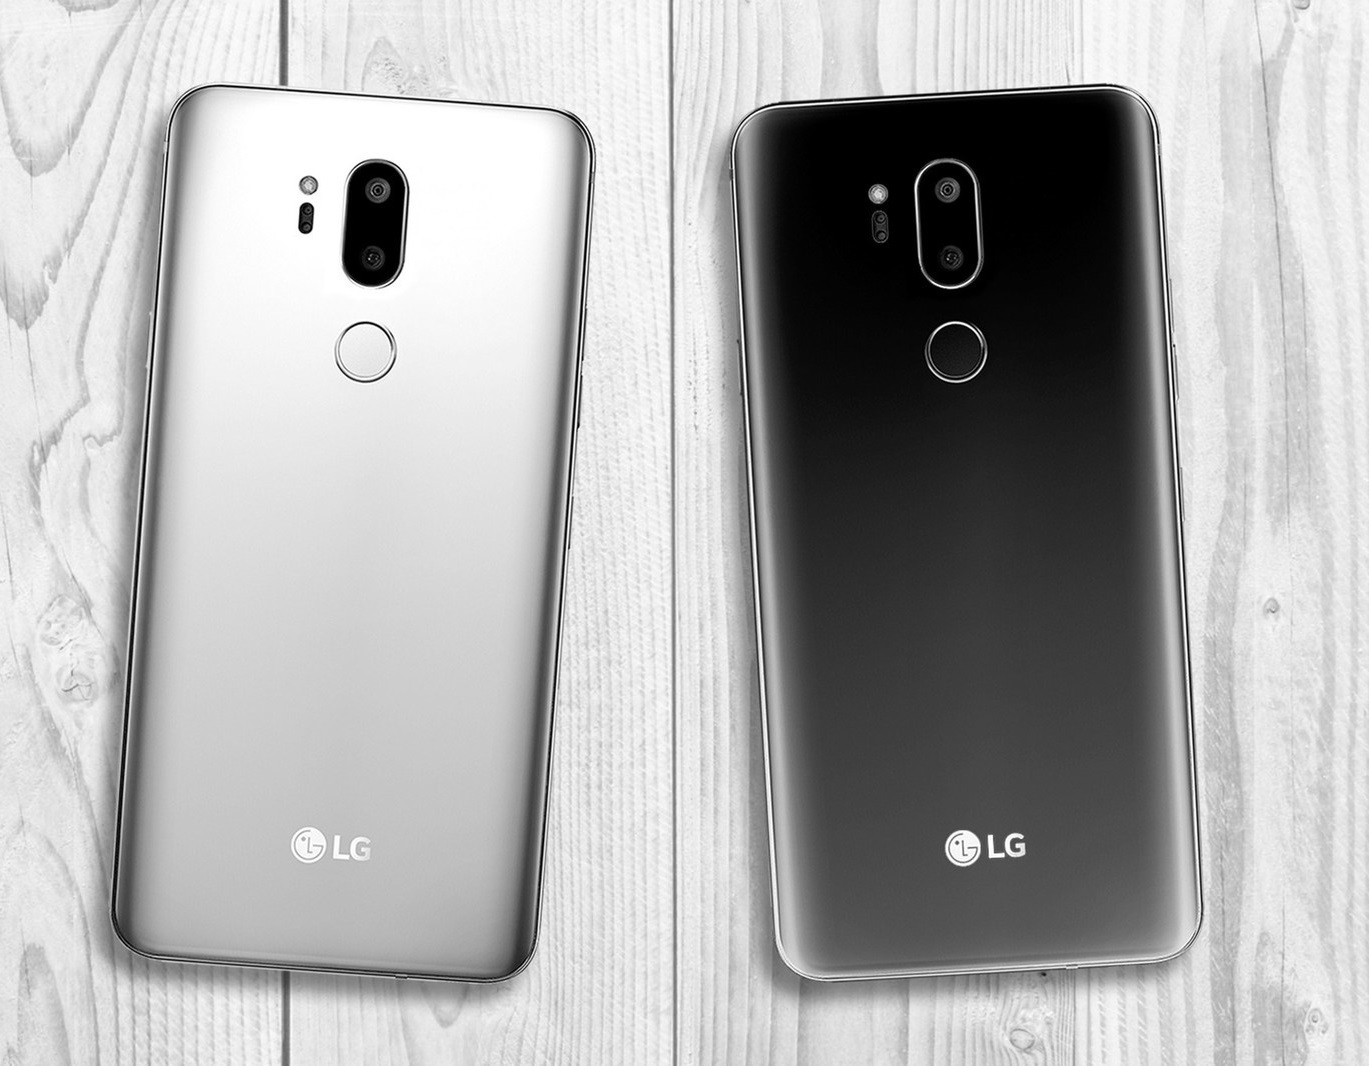 هذا هو كل ما نعرفه عن هاتف LG الرائد الجديد LG G7 ThinQ أحدث إصدارات العملاق الكوري